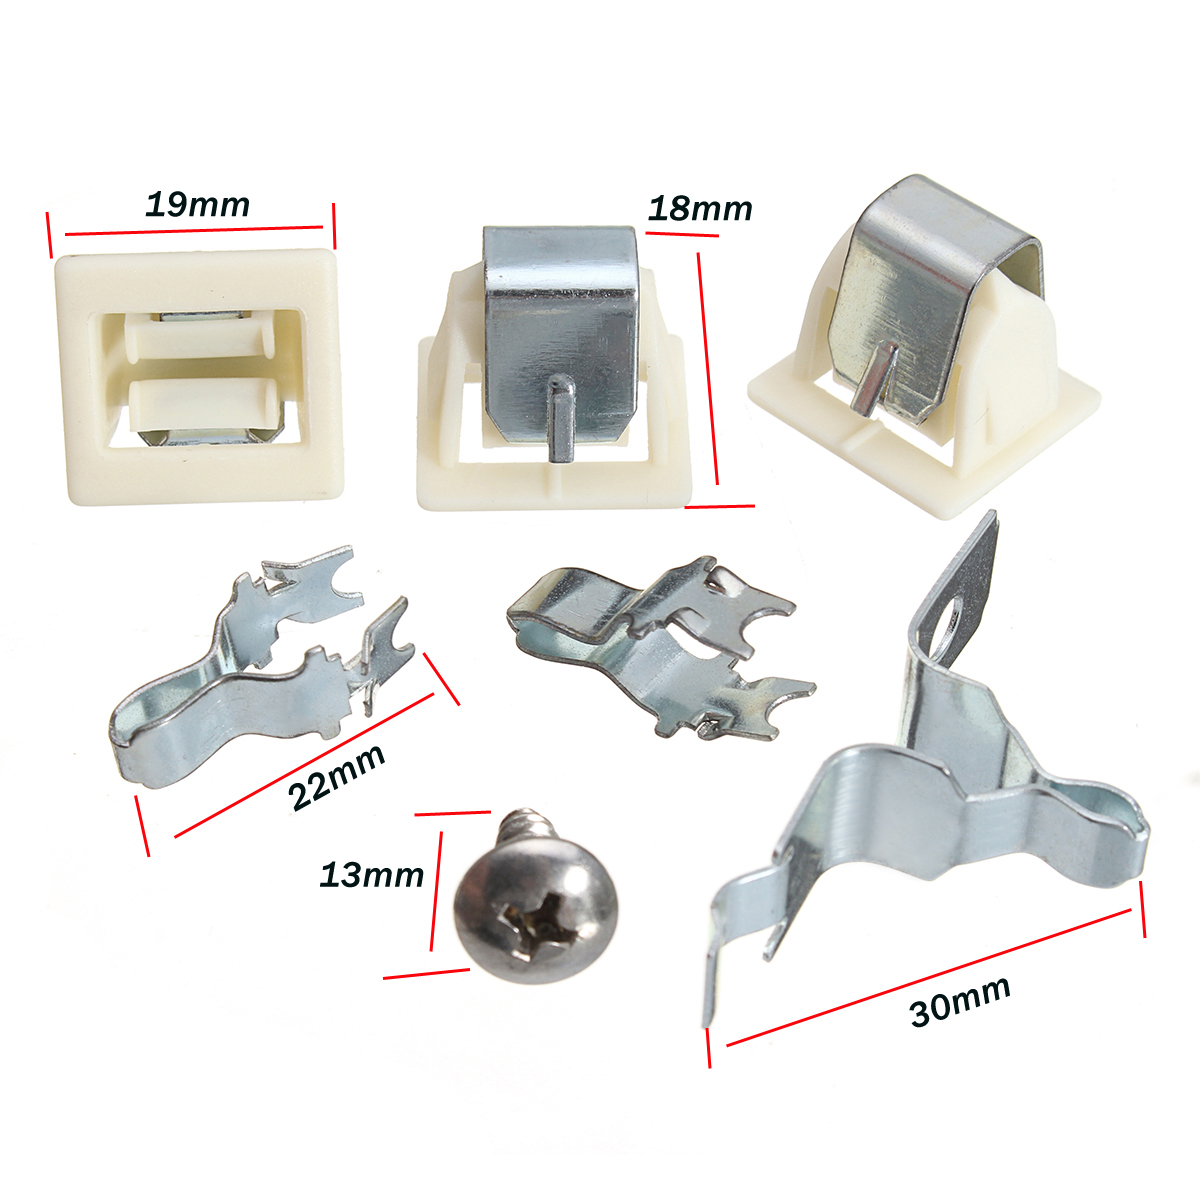 Dryer-Door-Latch-Kit-Part-For-Electrolux-Frigidaire-Kenmore-5366021400-279570-1332226